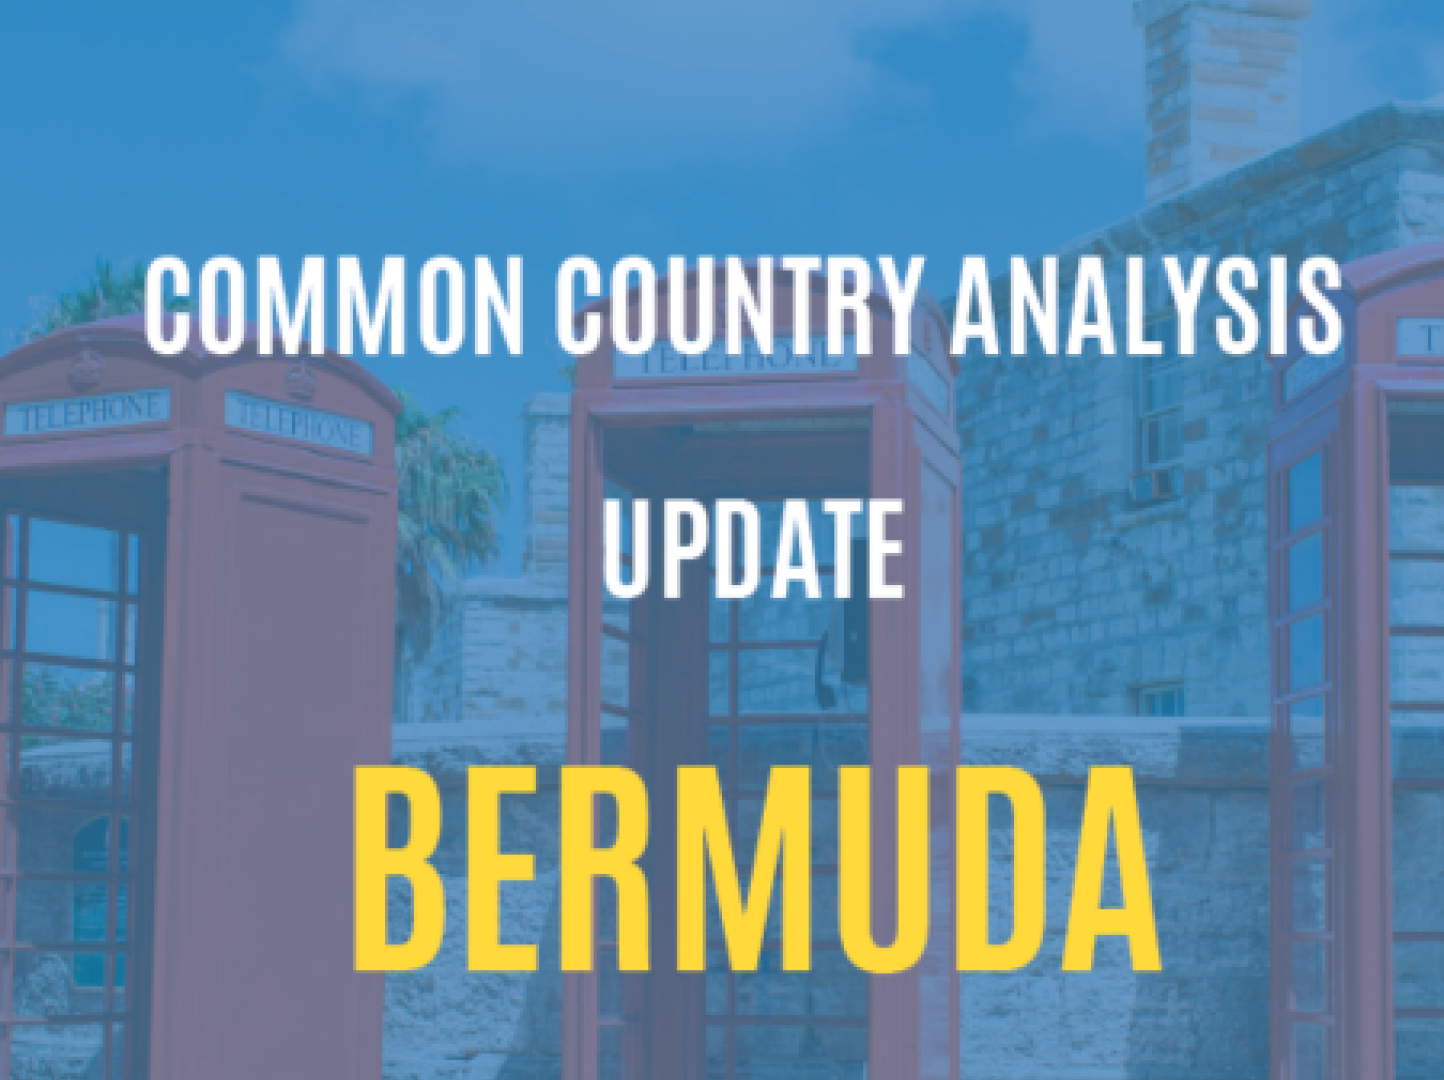 Bermuda Common Country Analysis Update 2023